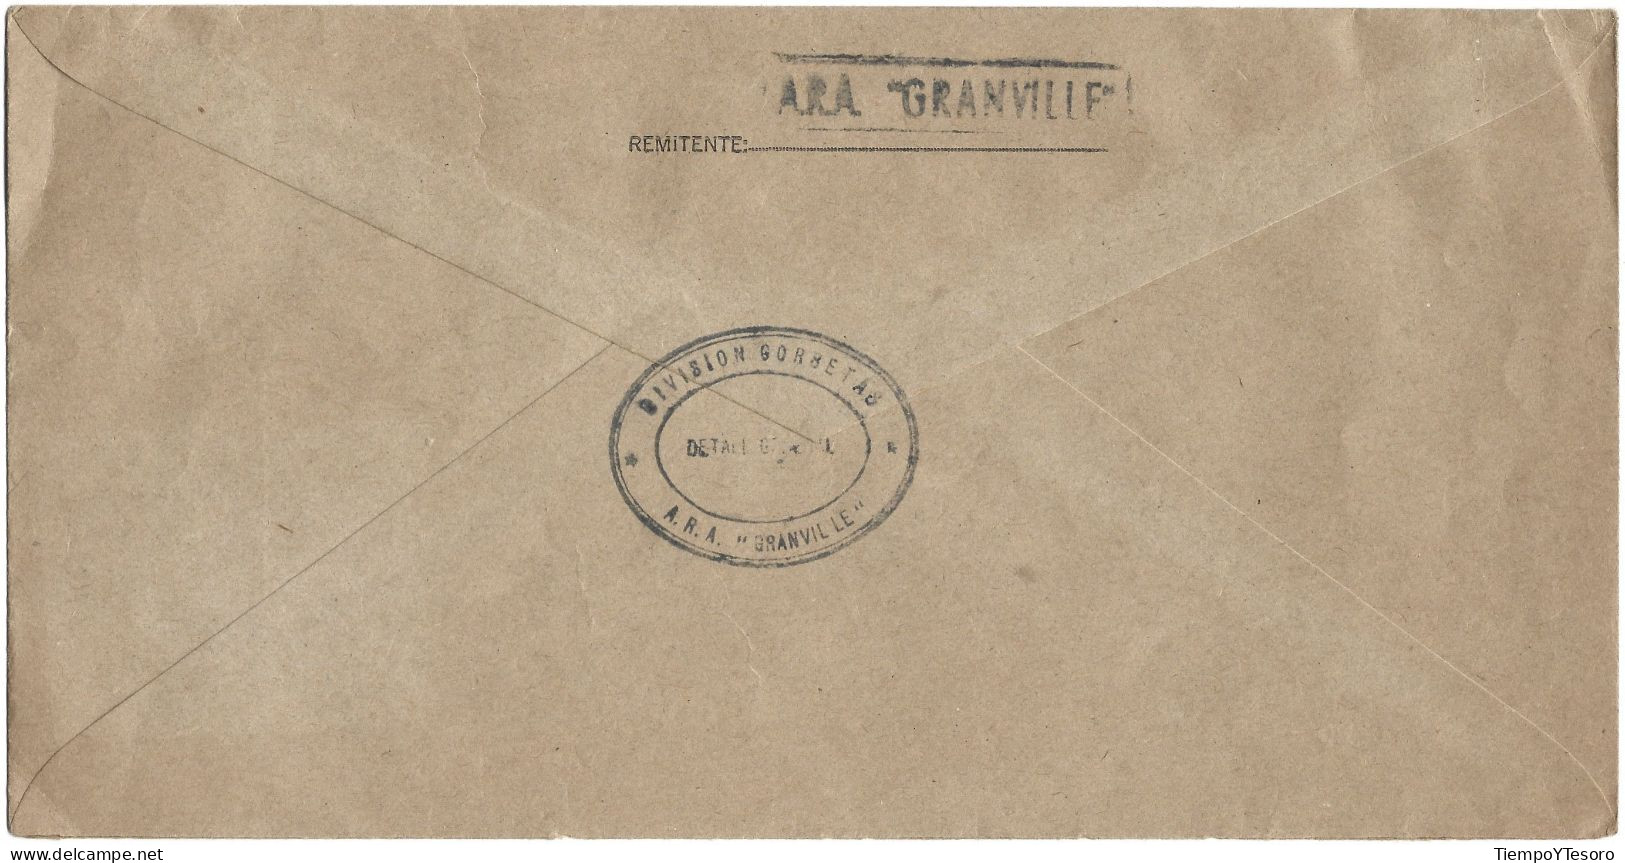 Correspondence - Argentina, Armada Argentina, ARA Granville,1997, N°220 - Usati